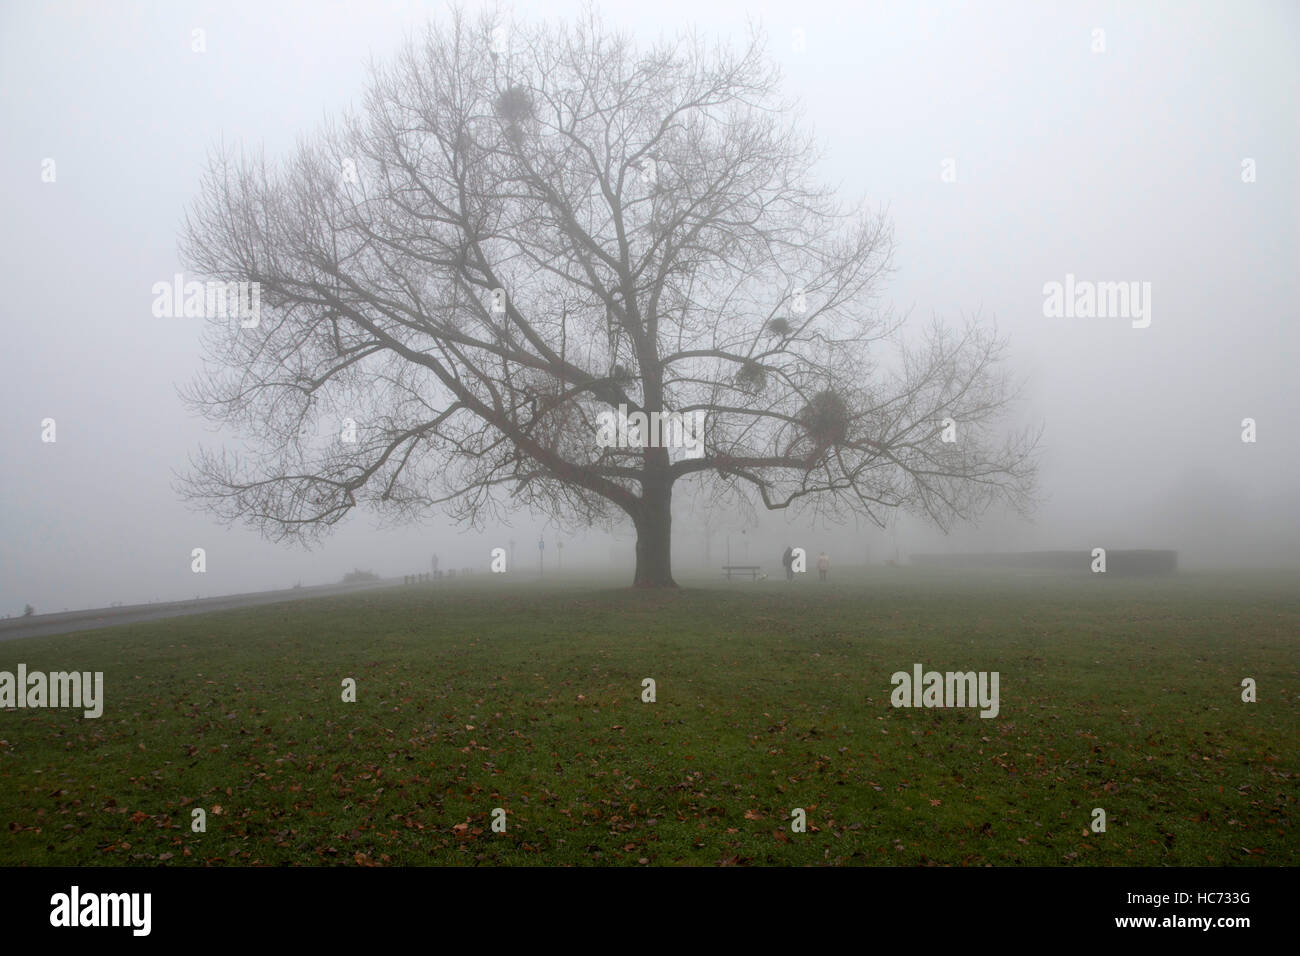 Ein nebliger Tag am Riverside Park Southampton, die neben dem Fluss Itchen läuft, die durch den Nebel nicht im Bild sichtbar ist Stockfoto